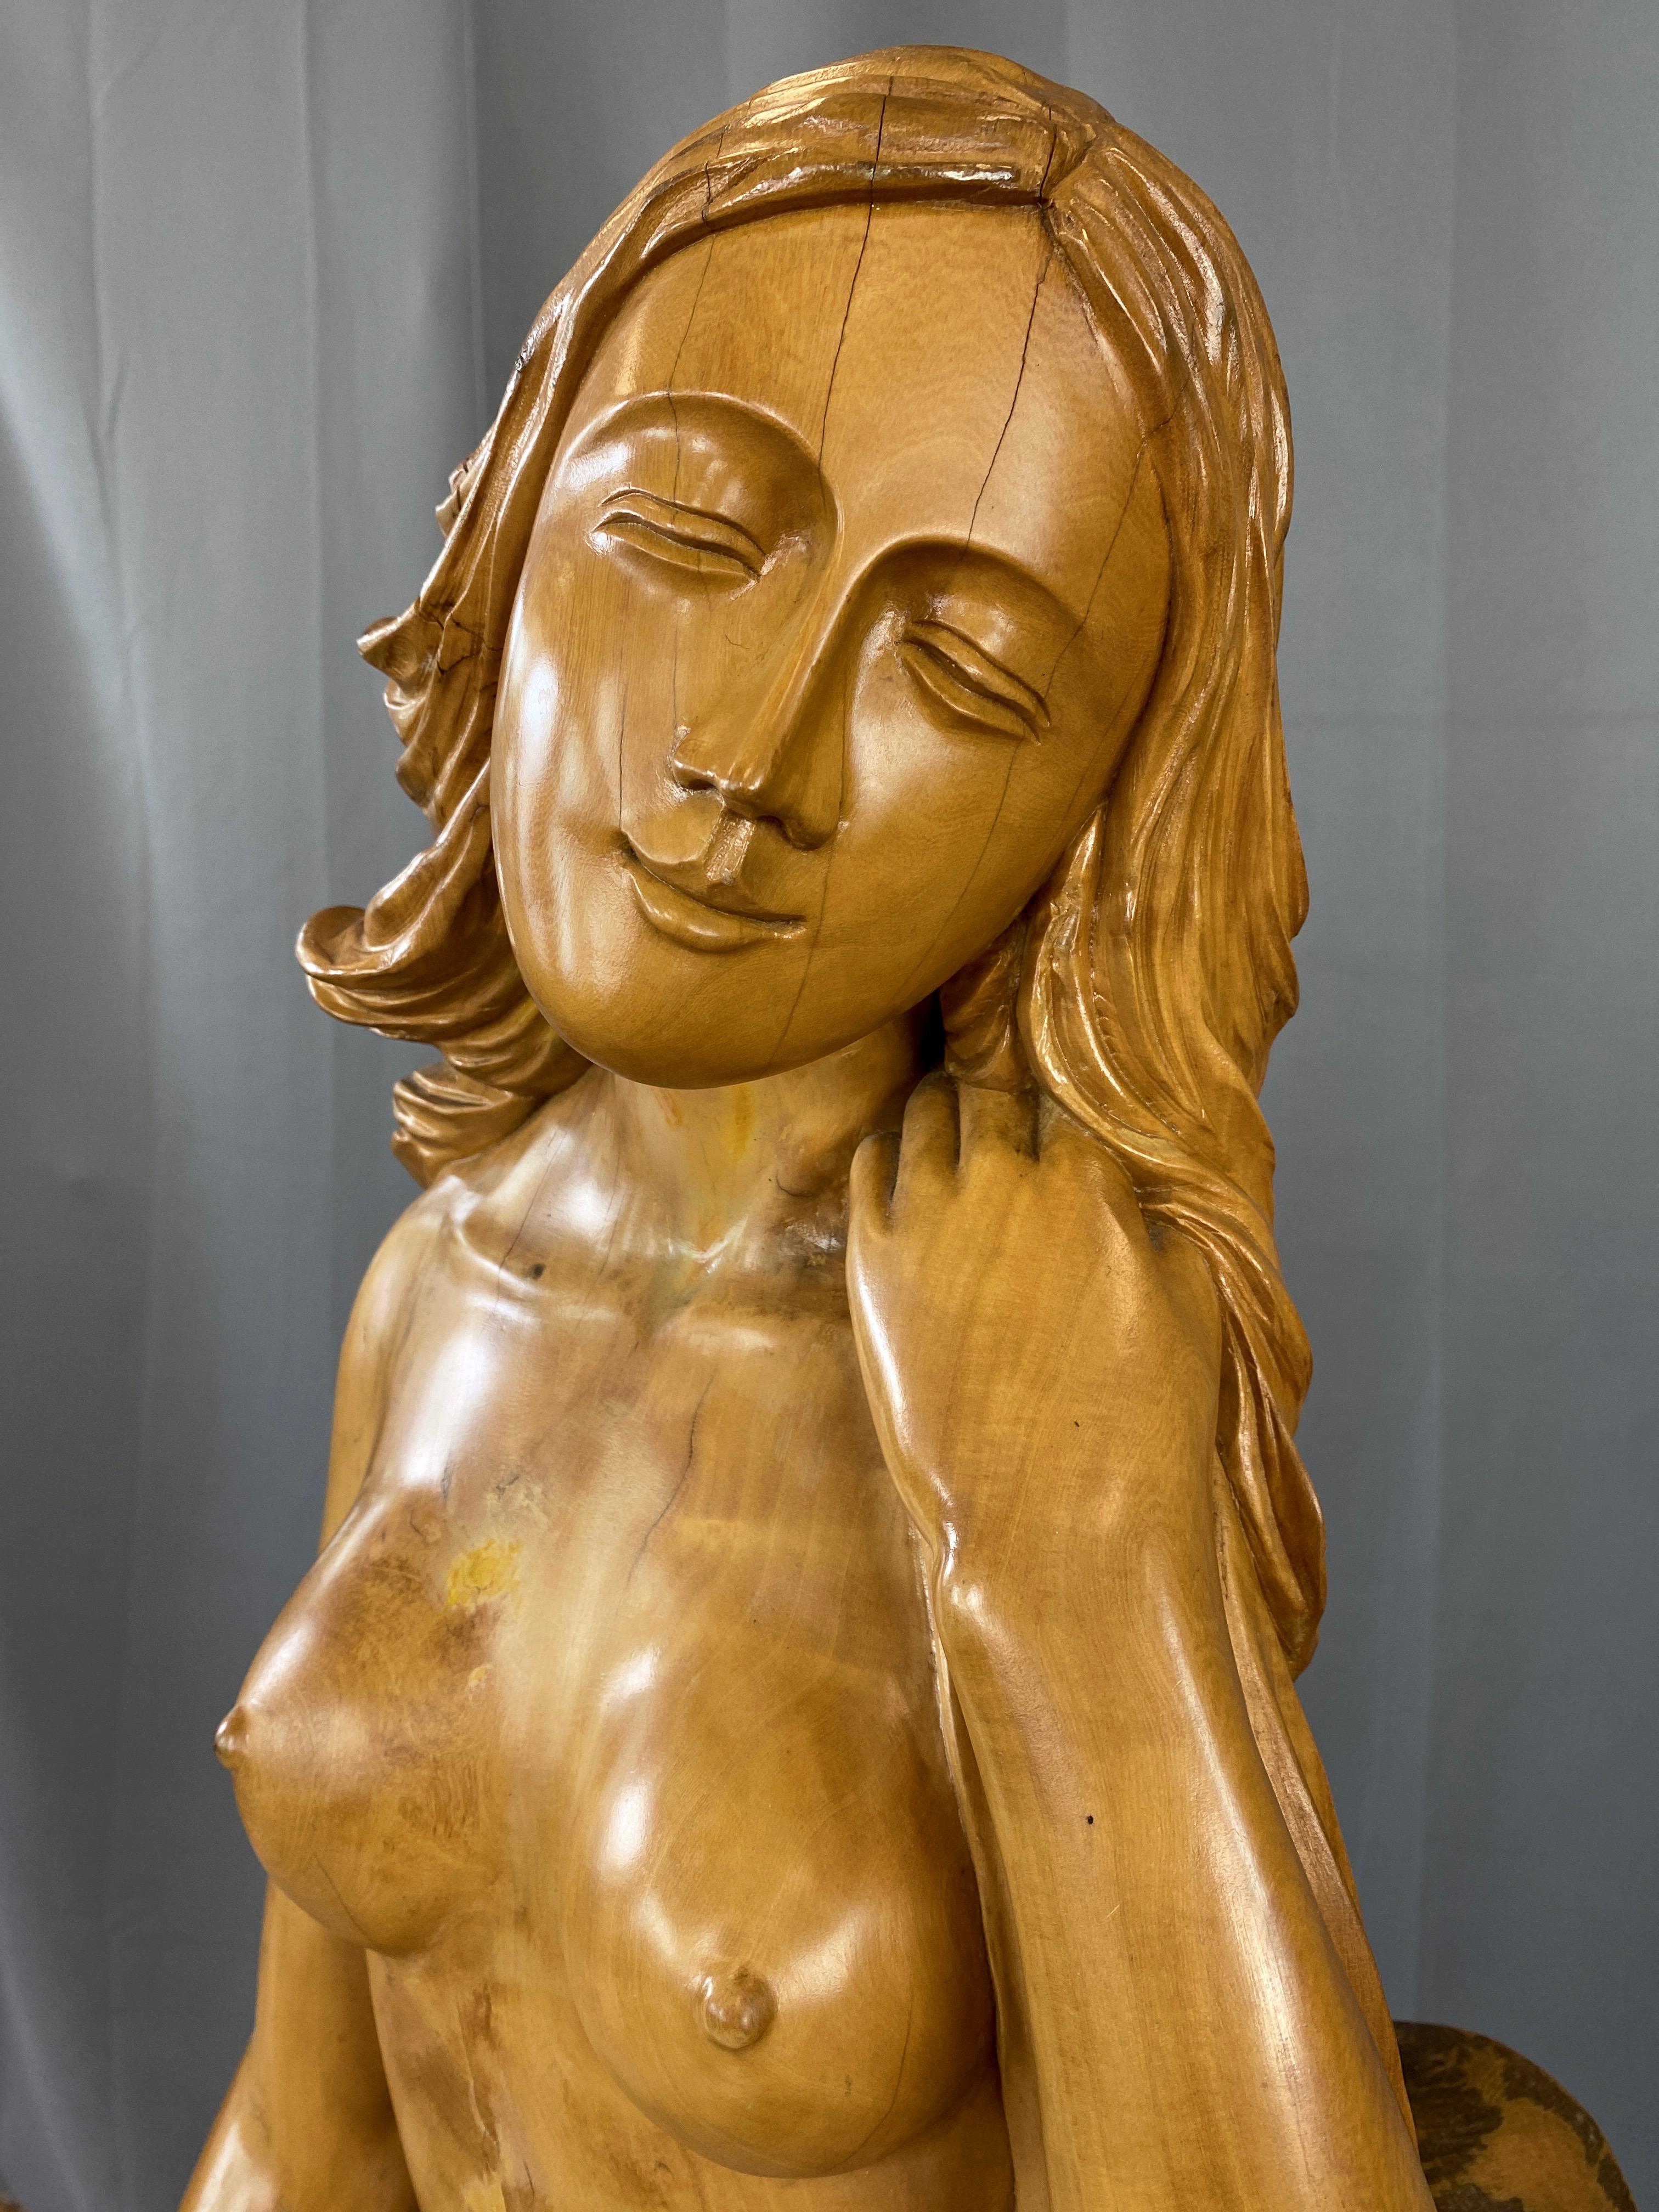 Large Hand-Carved Cypress Knee Figural Sculpture After Botticelli's Venus, 1970s For Sale 3